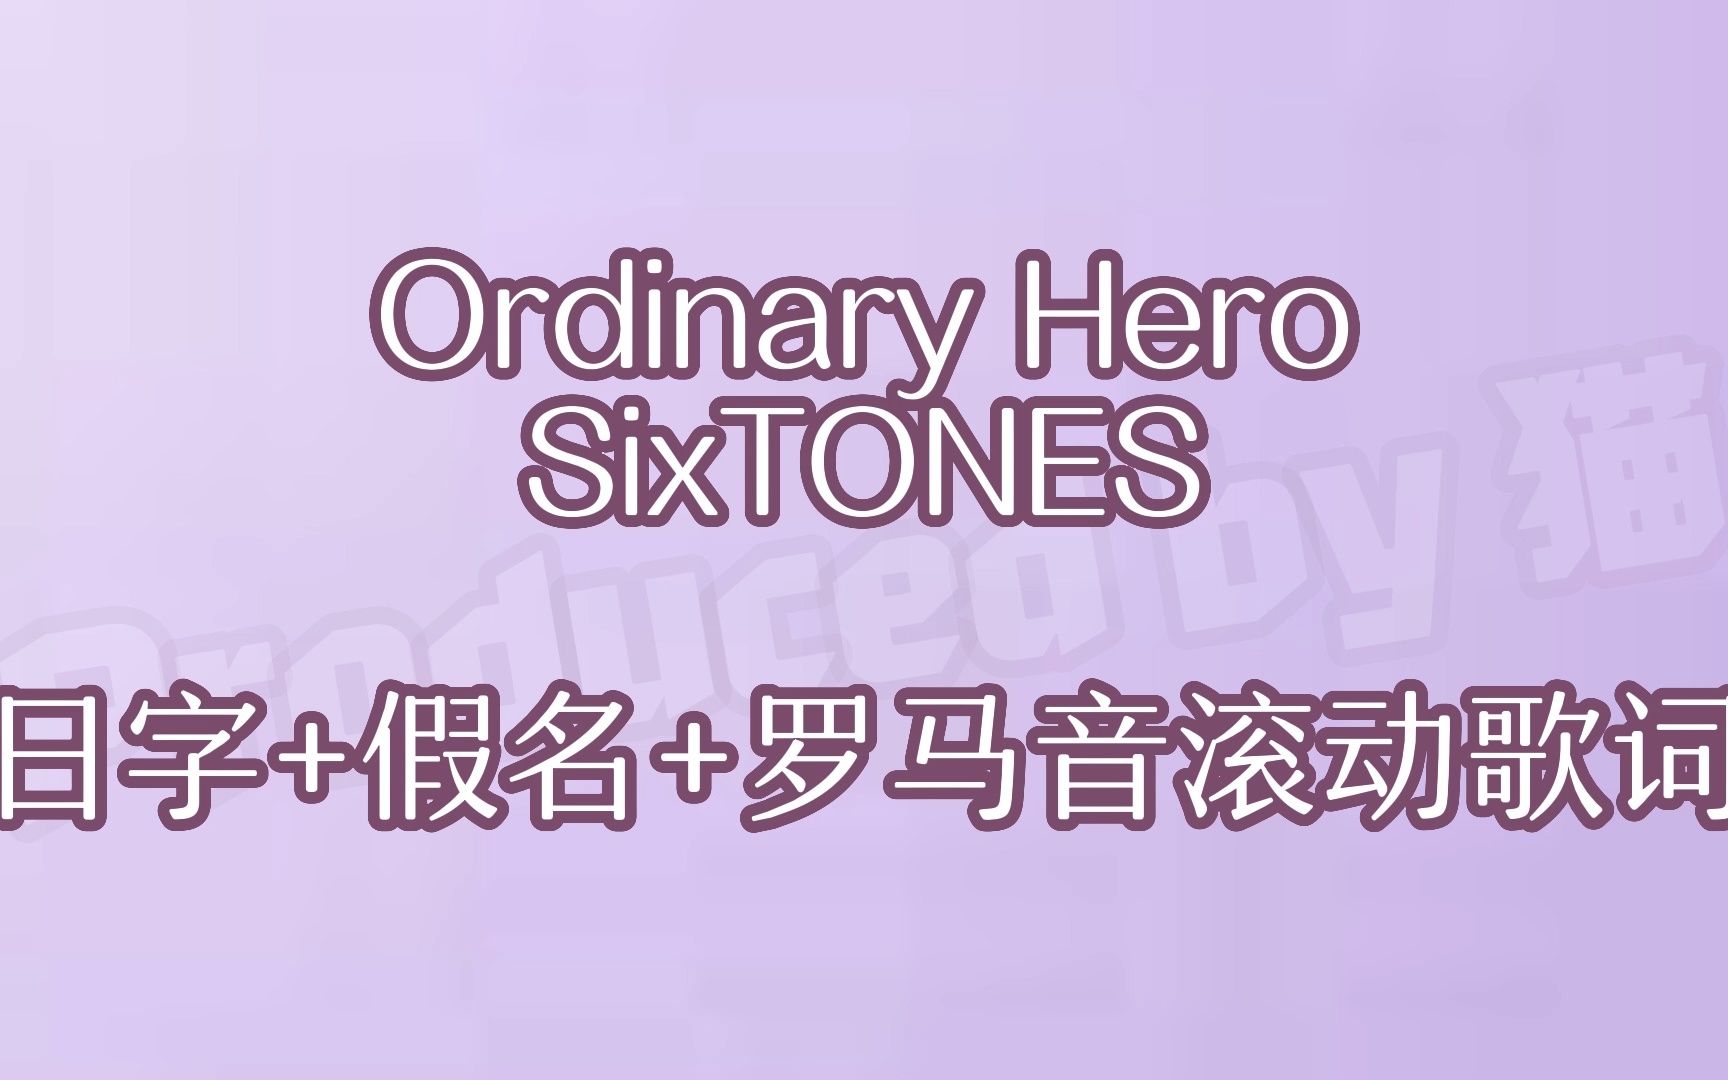 【SixTONES】Ordinary Hero日字+假名+罗马音滚动歌词 [学歌向]